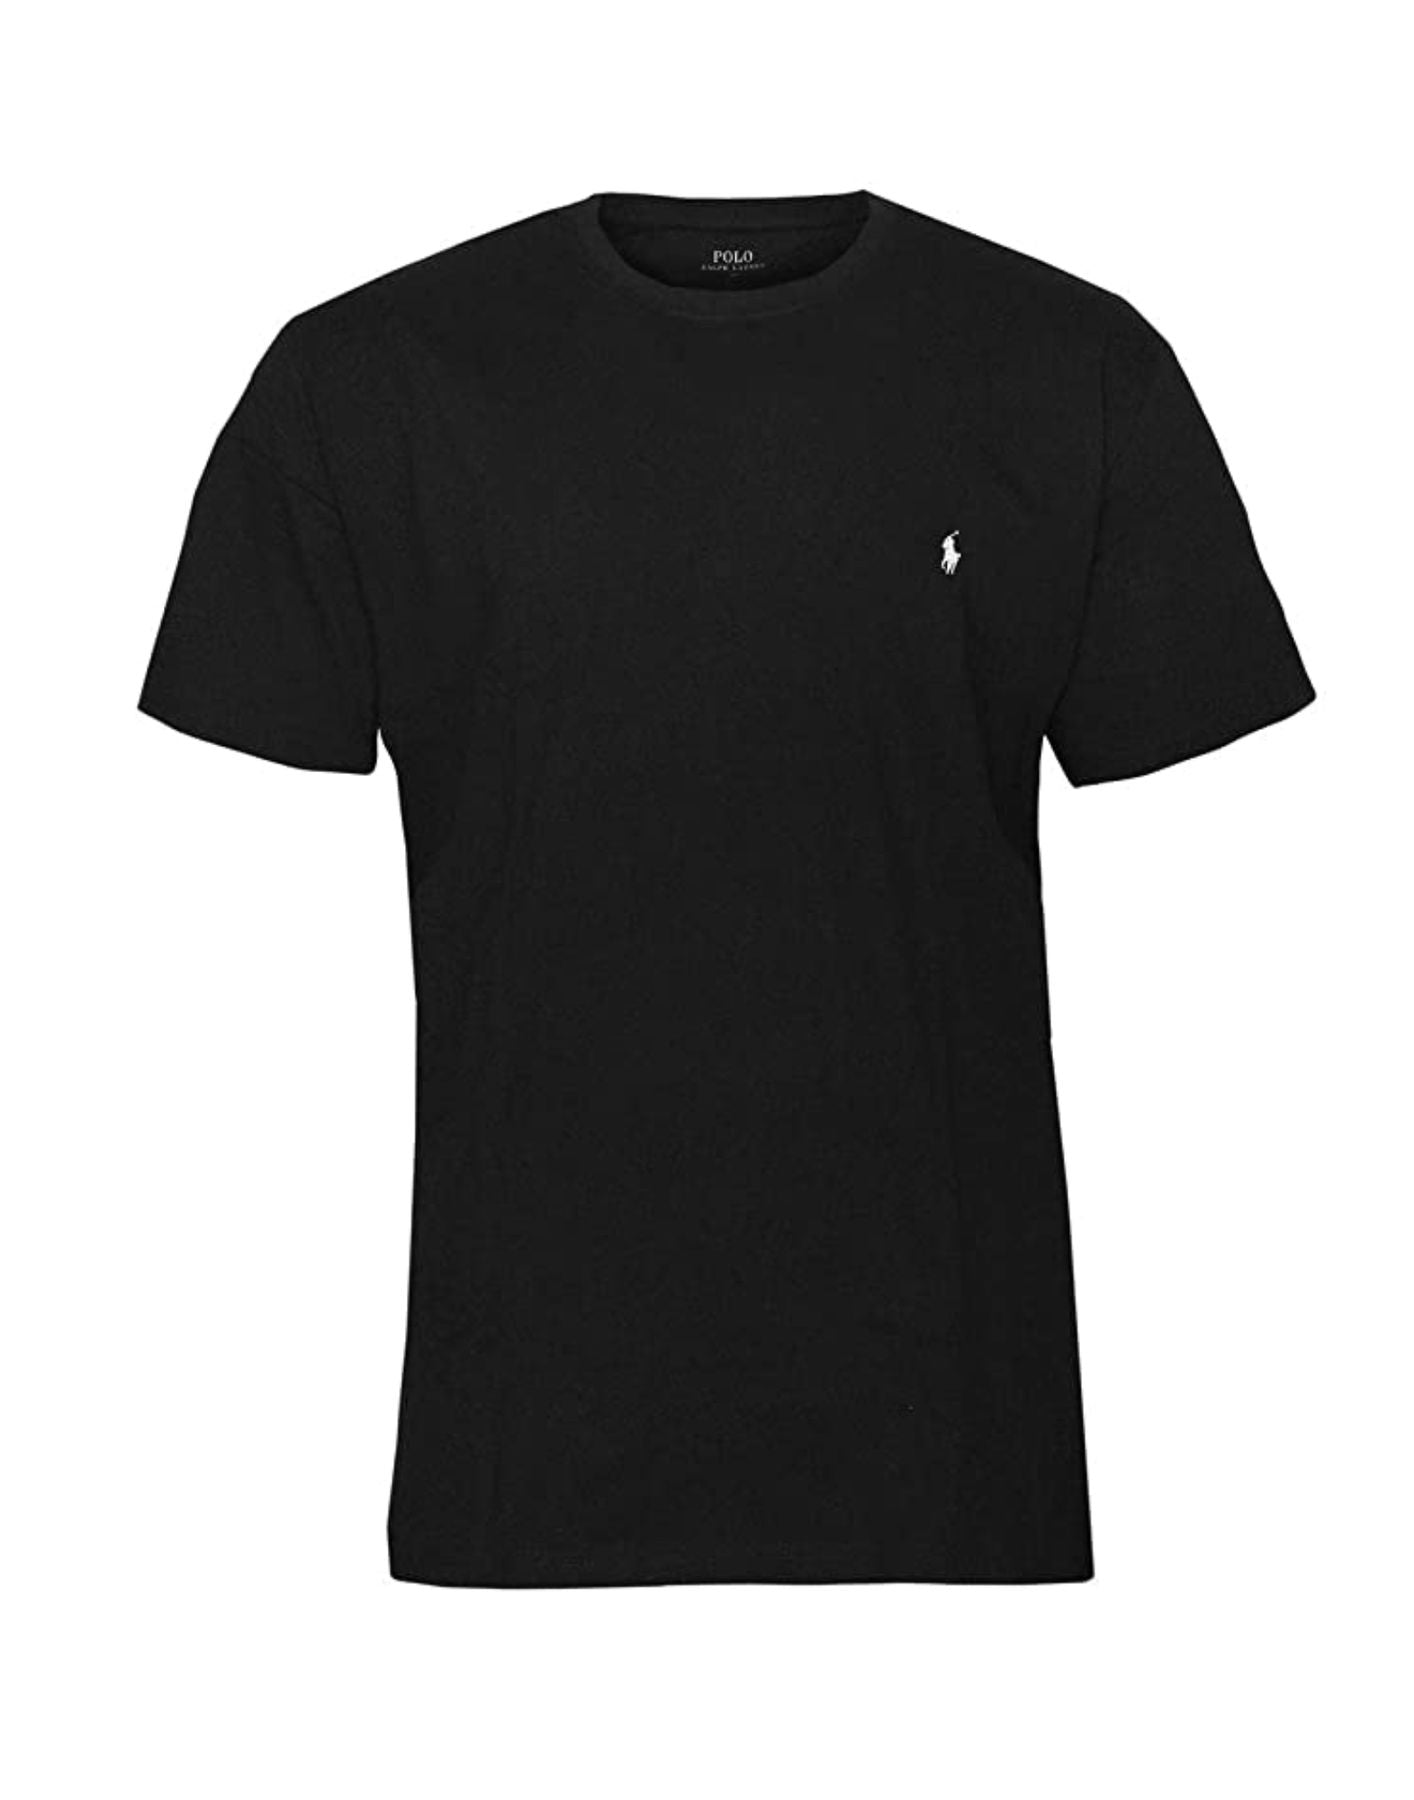 T-shirt man 714844756001 noir Polo Ralph Lauren